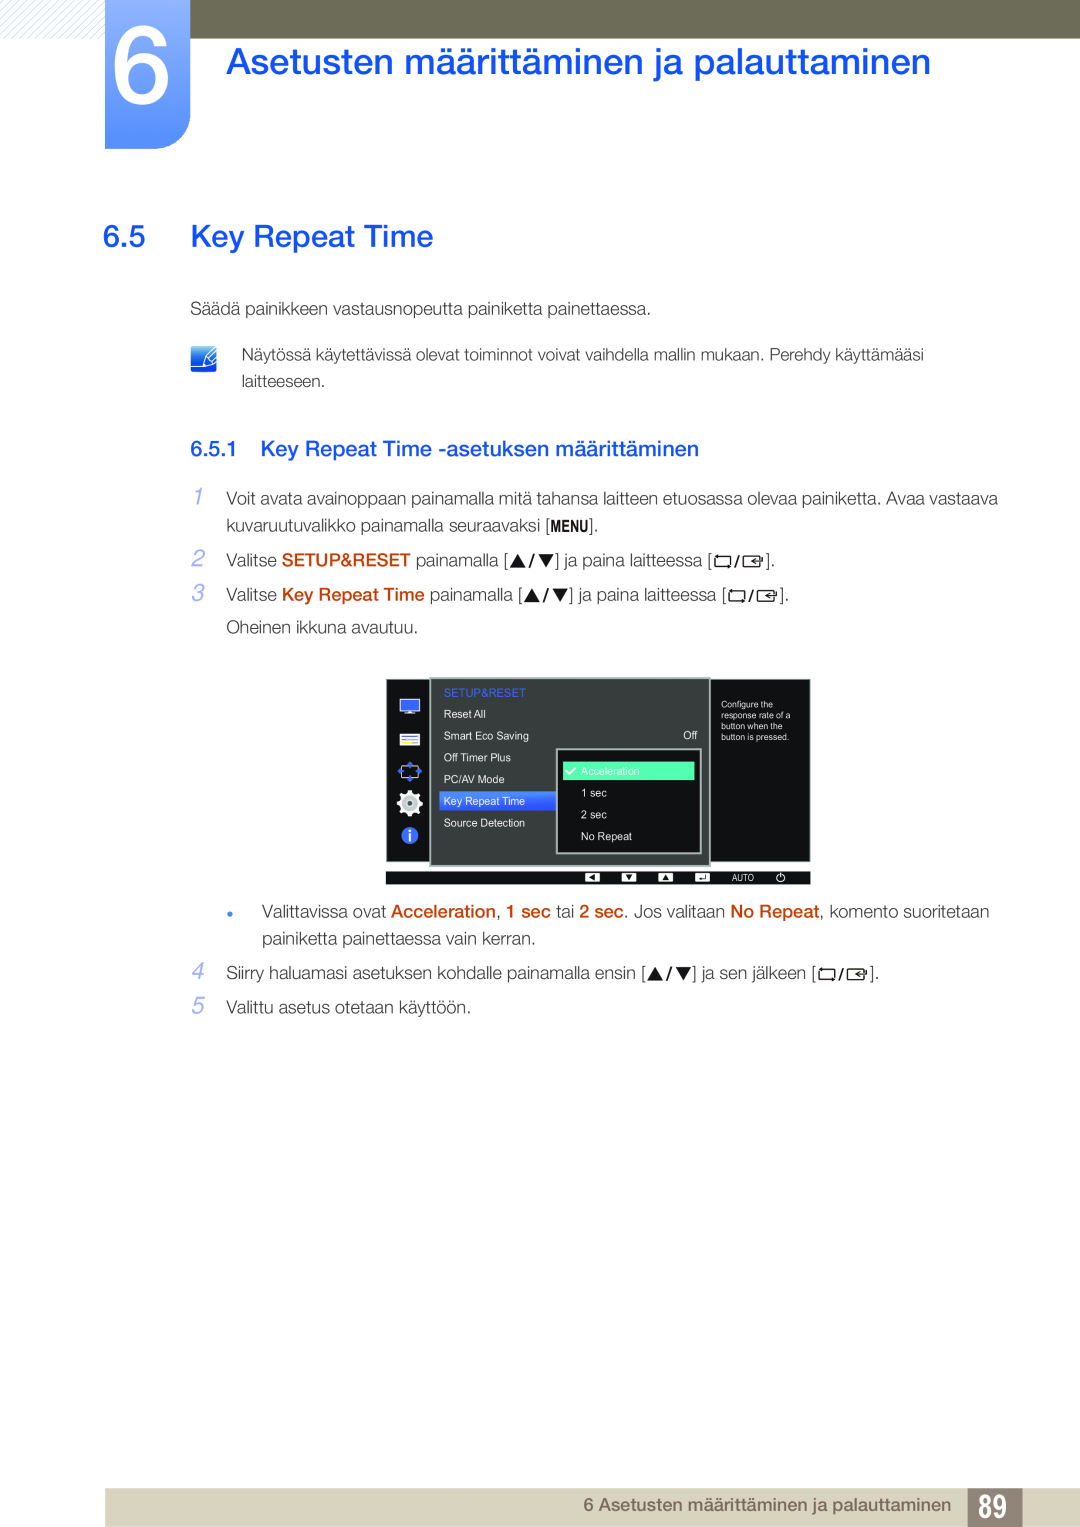 Samsung LS24E65UXWC/XE manual Key Repeat Time -asetuksen määrittäminen, Asetusten määrittäminen ja palauttaminen 